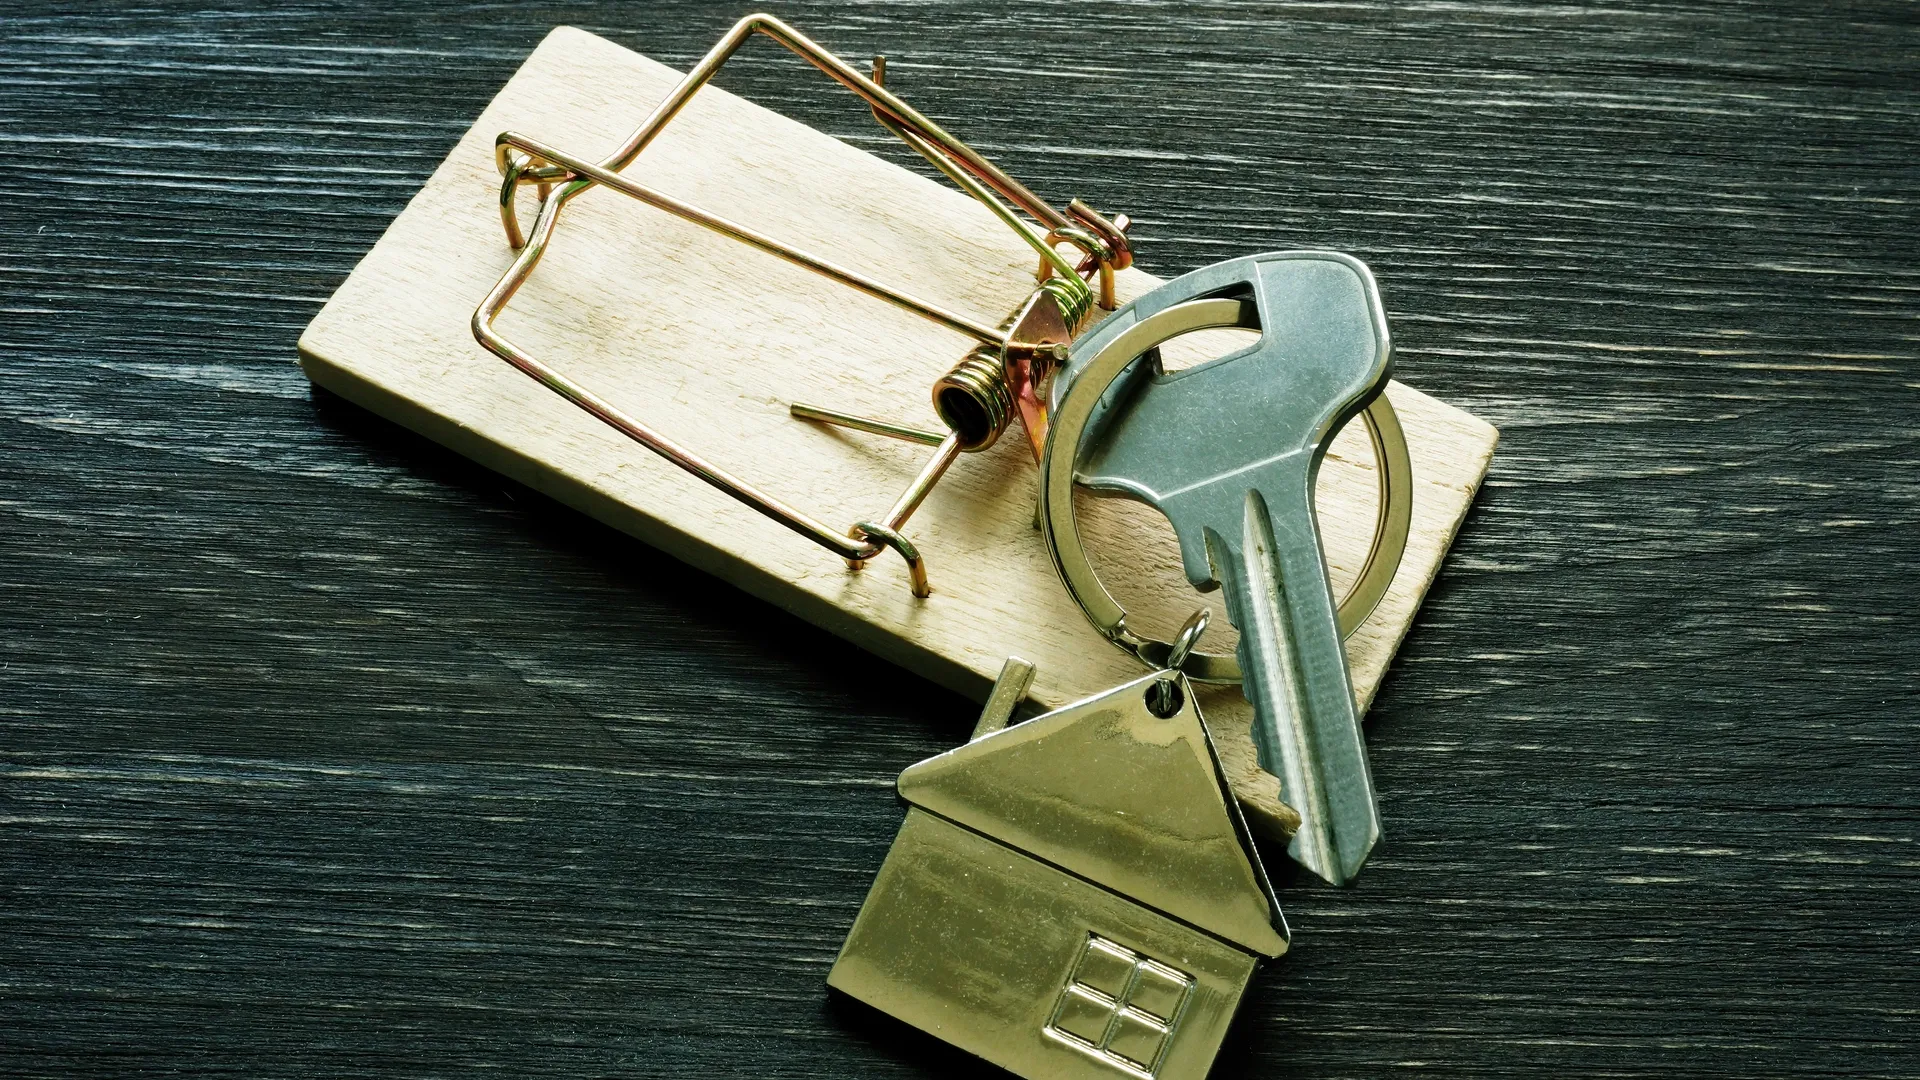 Юристы рекомендуют не закладывать недвижимость в МФО. Фото: Vitalii Vodolazskyi / Shutterstock.com